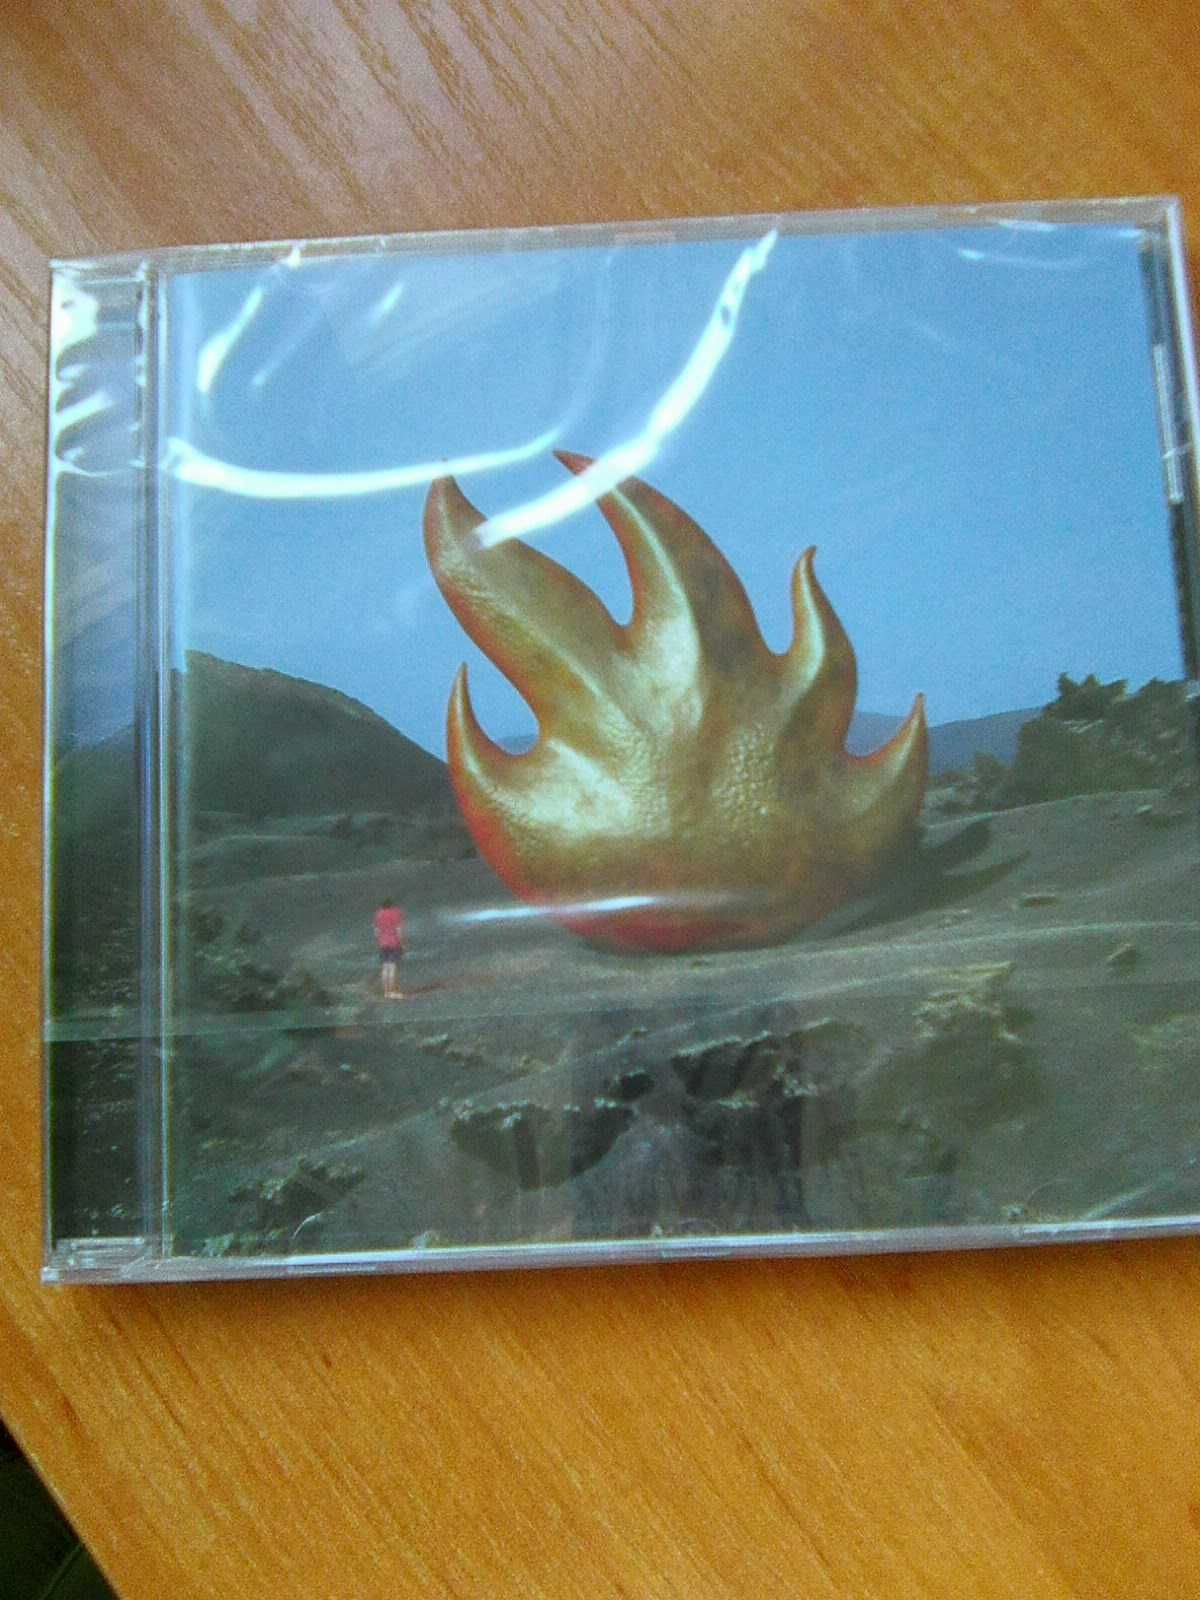 Audioslave  Audioslave